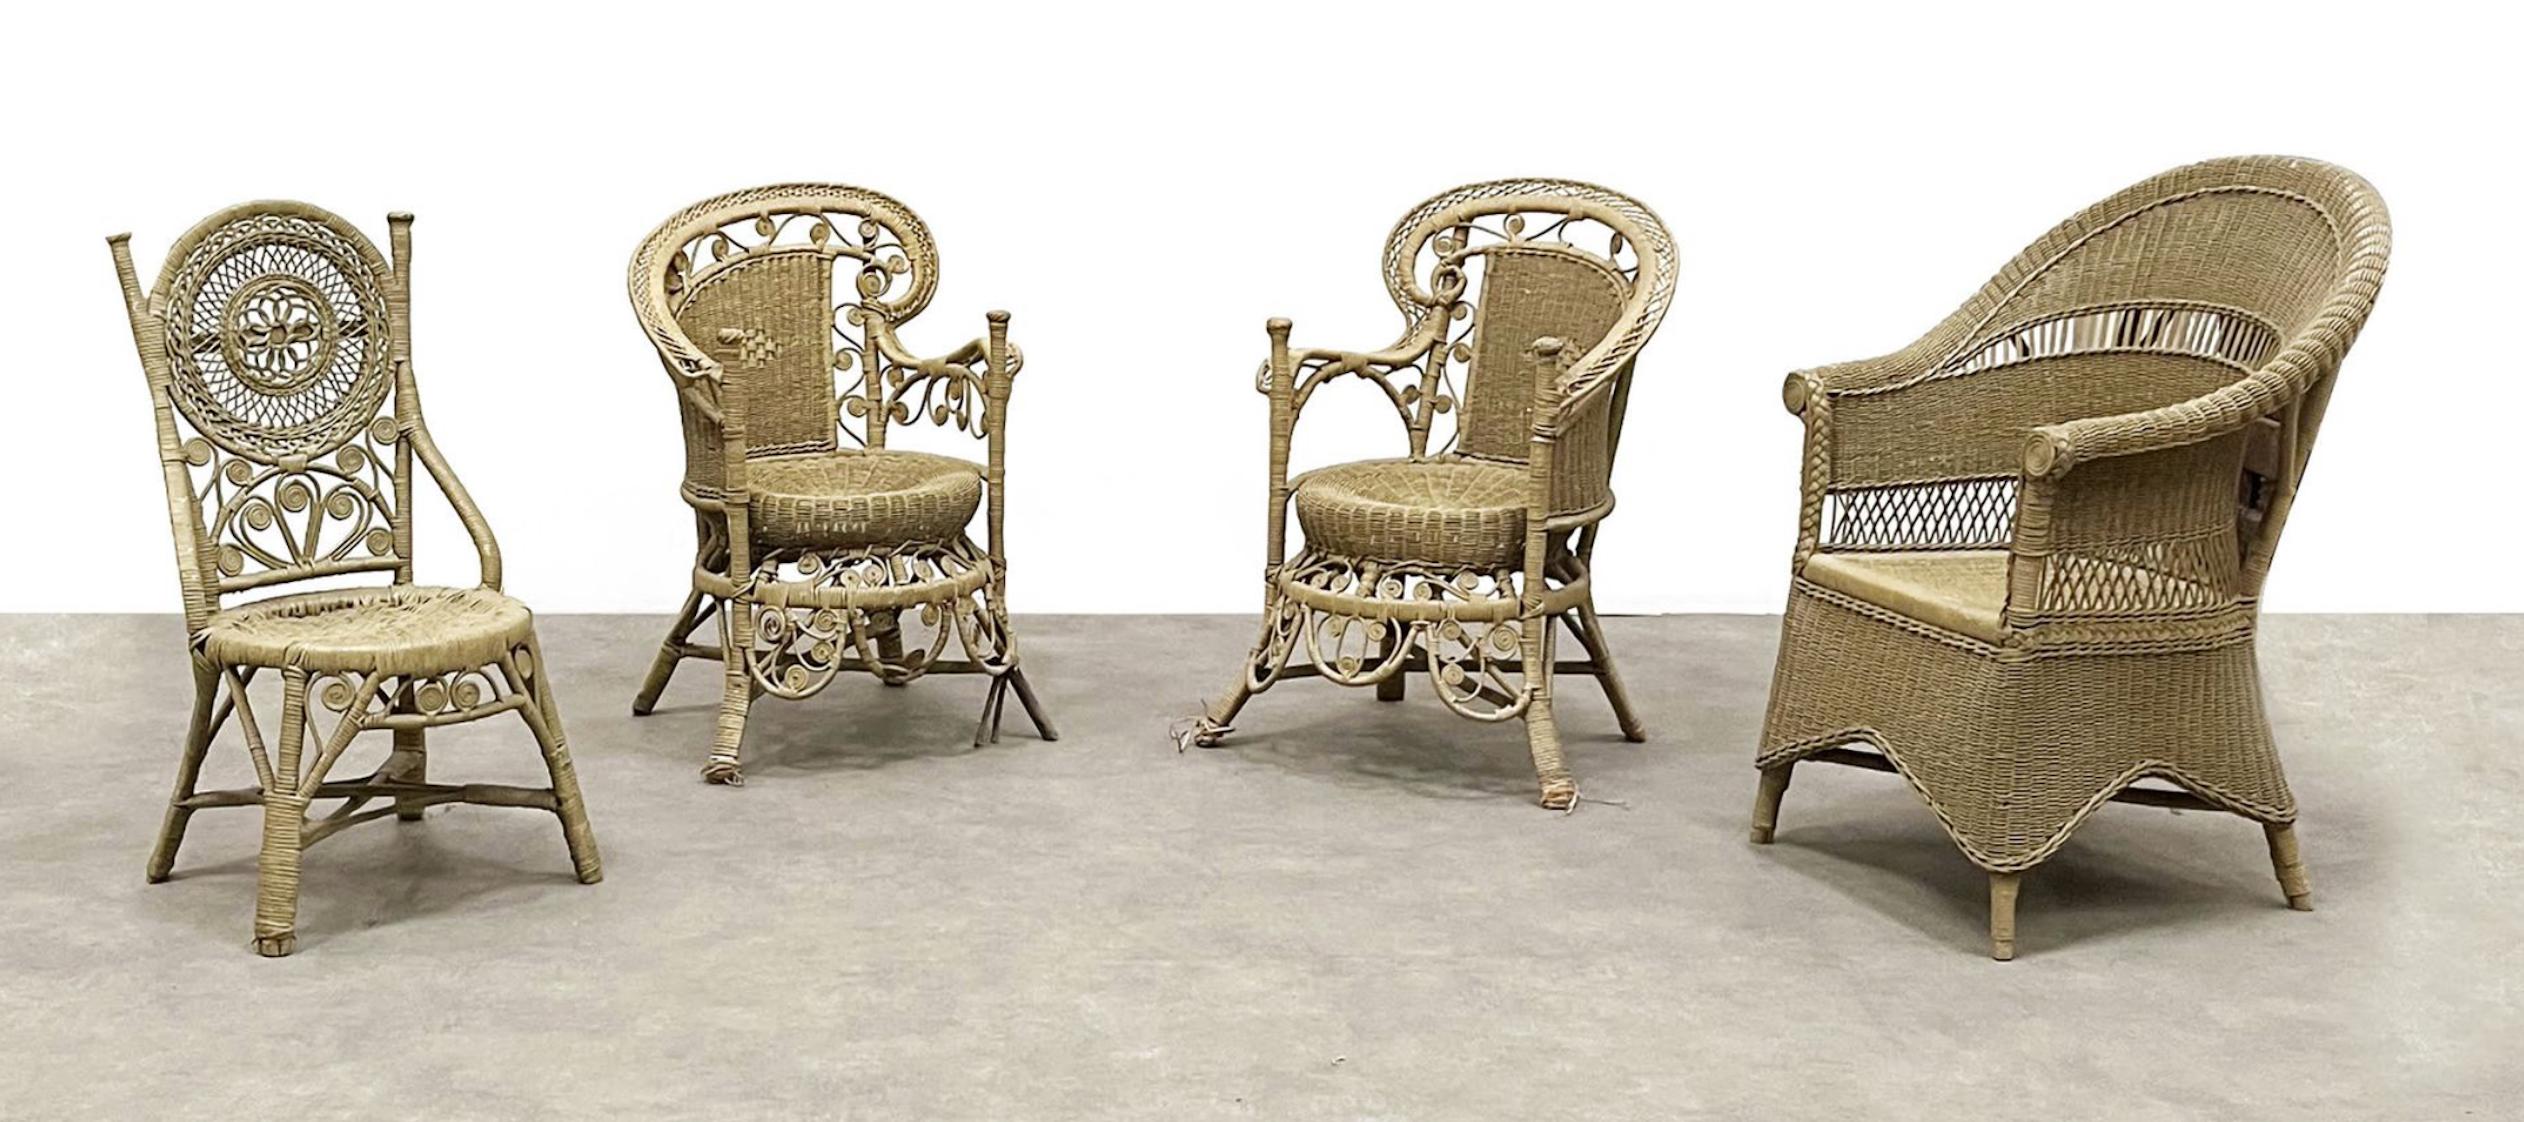 Vier verschiedene Gartenstühle aus Schilfrohr mit unterschiedlichen Formen und Strukturen.
Authentischer, guter Zustand ohne Restaurierungen.
Frankreich, um 1920.